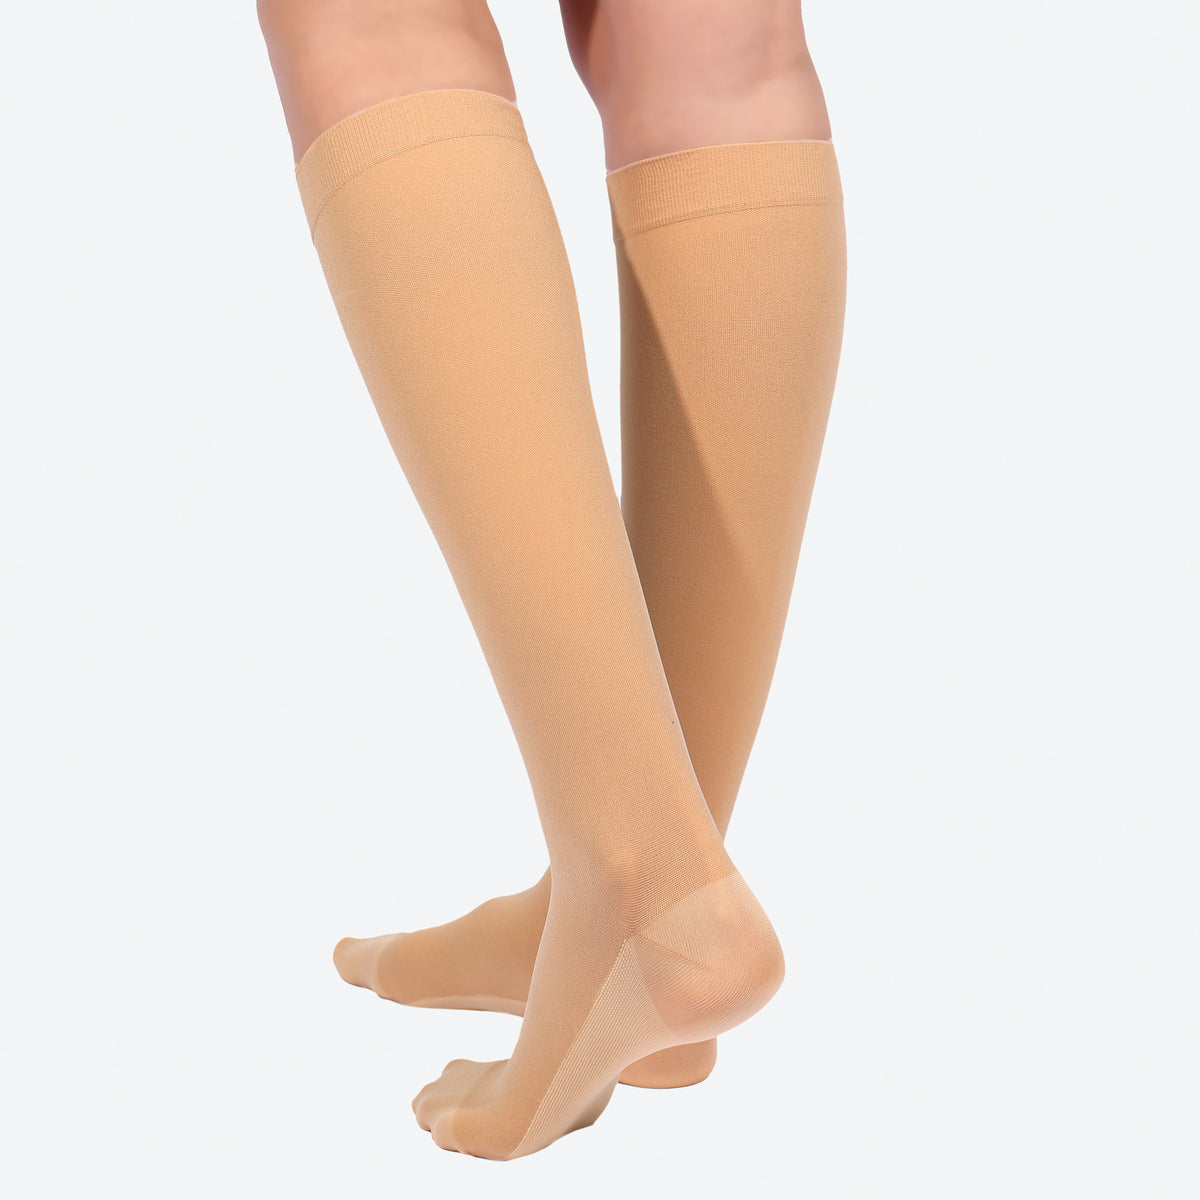 Copper Fit Medical Grade Compression Socks - Medium